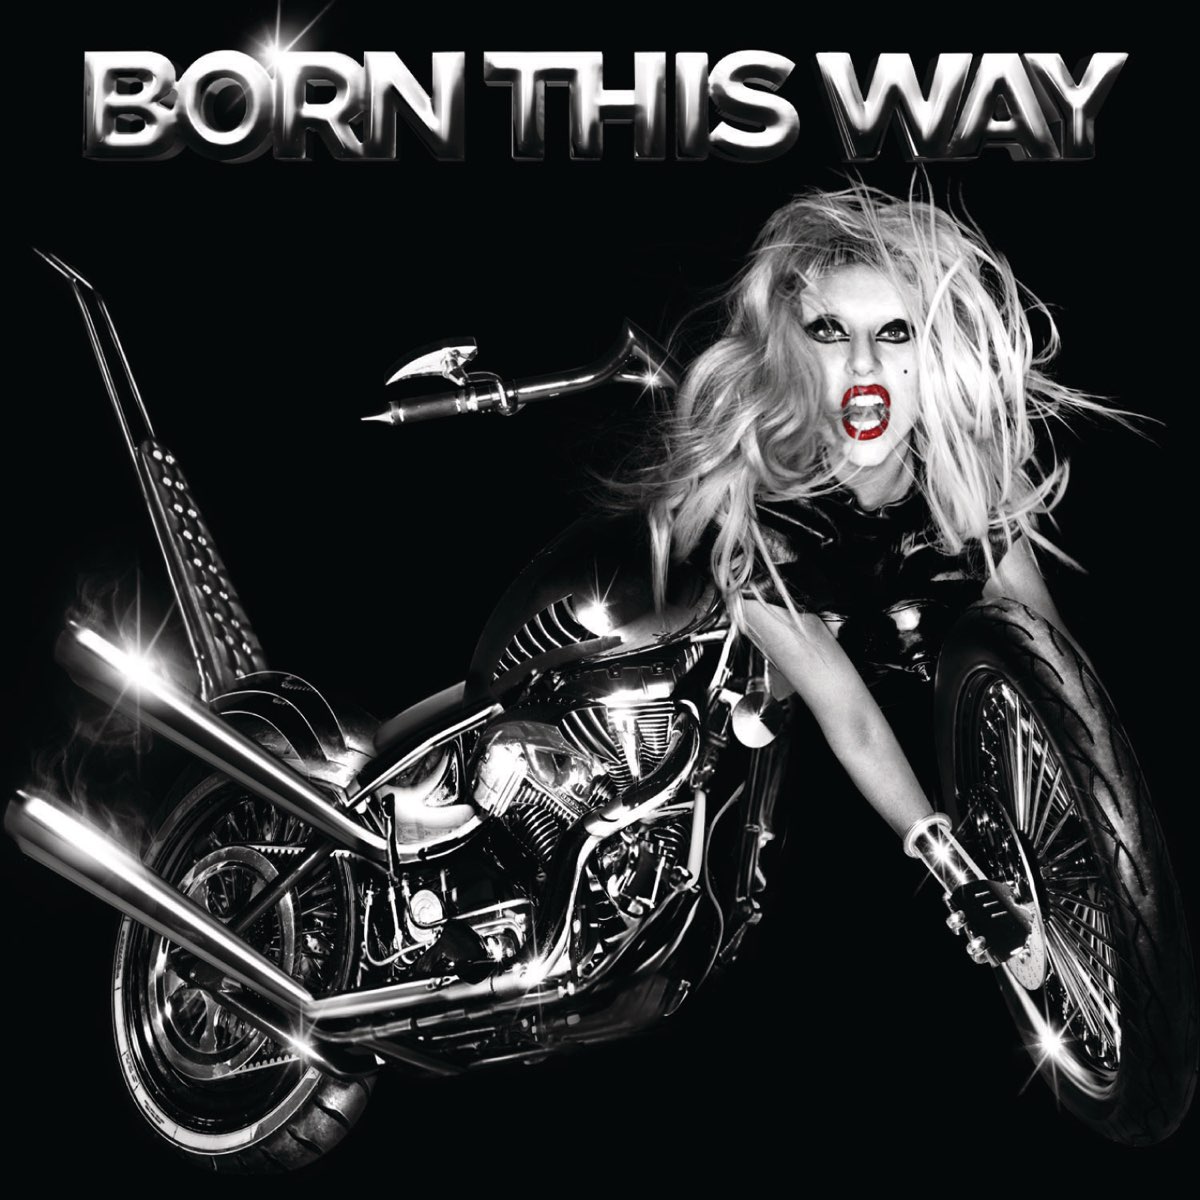 Born This Way - レディー・ガガのアルバム - Apple Music